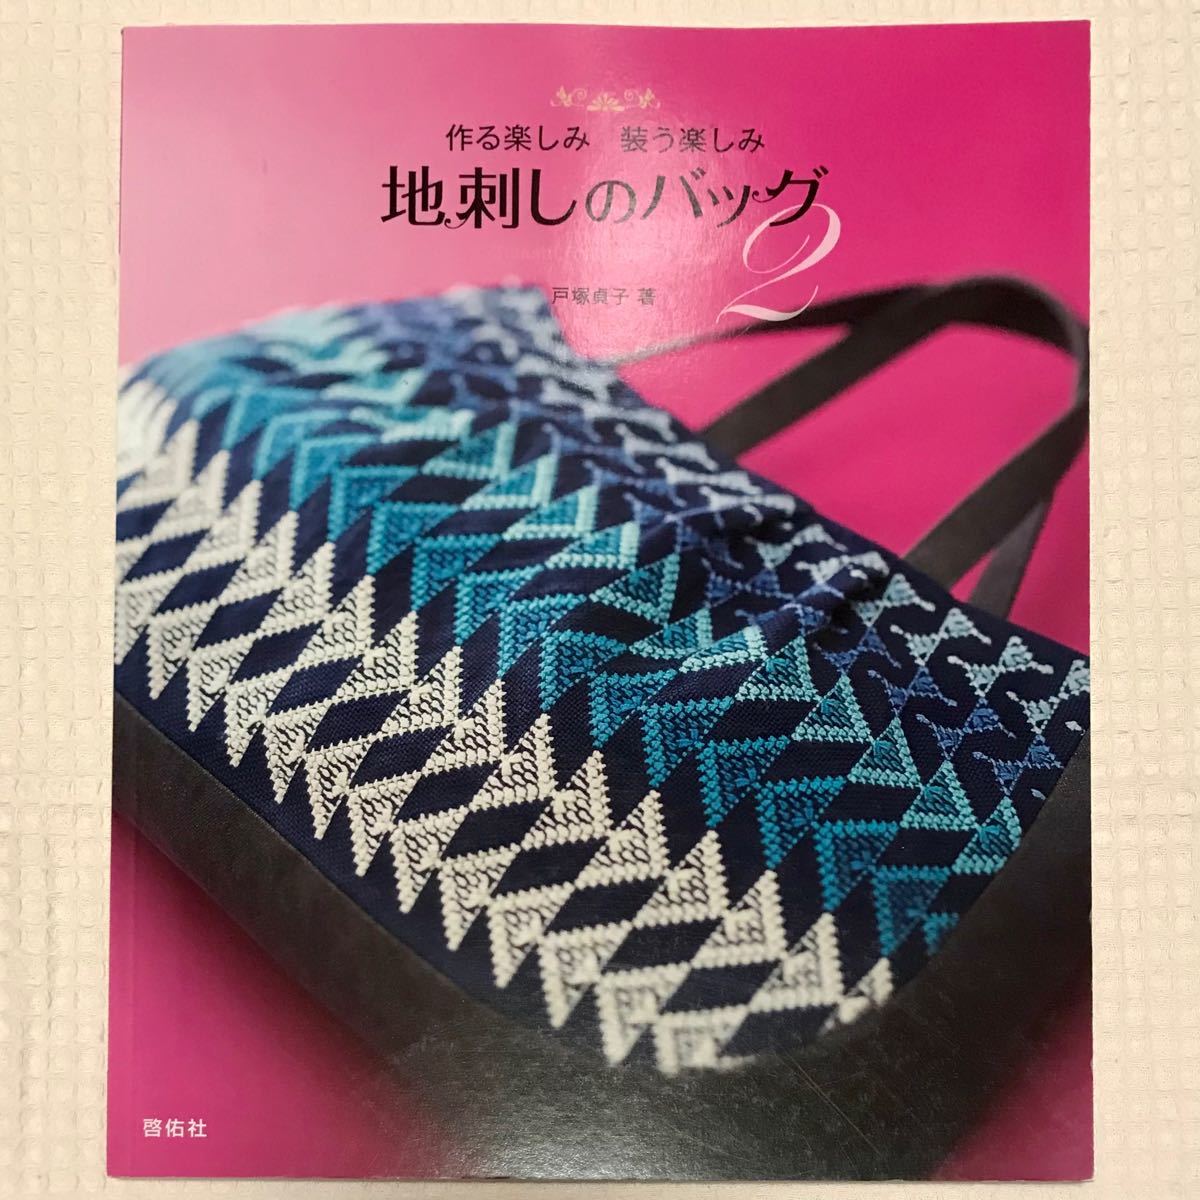 Paypayフリマ 地刺しのバッグ 作る楽しみ装う楽しみ 2 戸塚貞子 刺繍 地刺し バッグの作り方